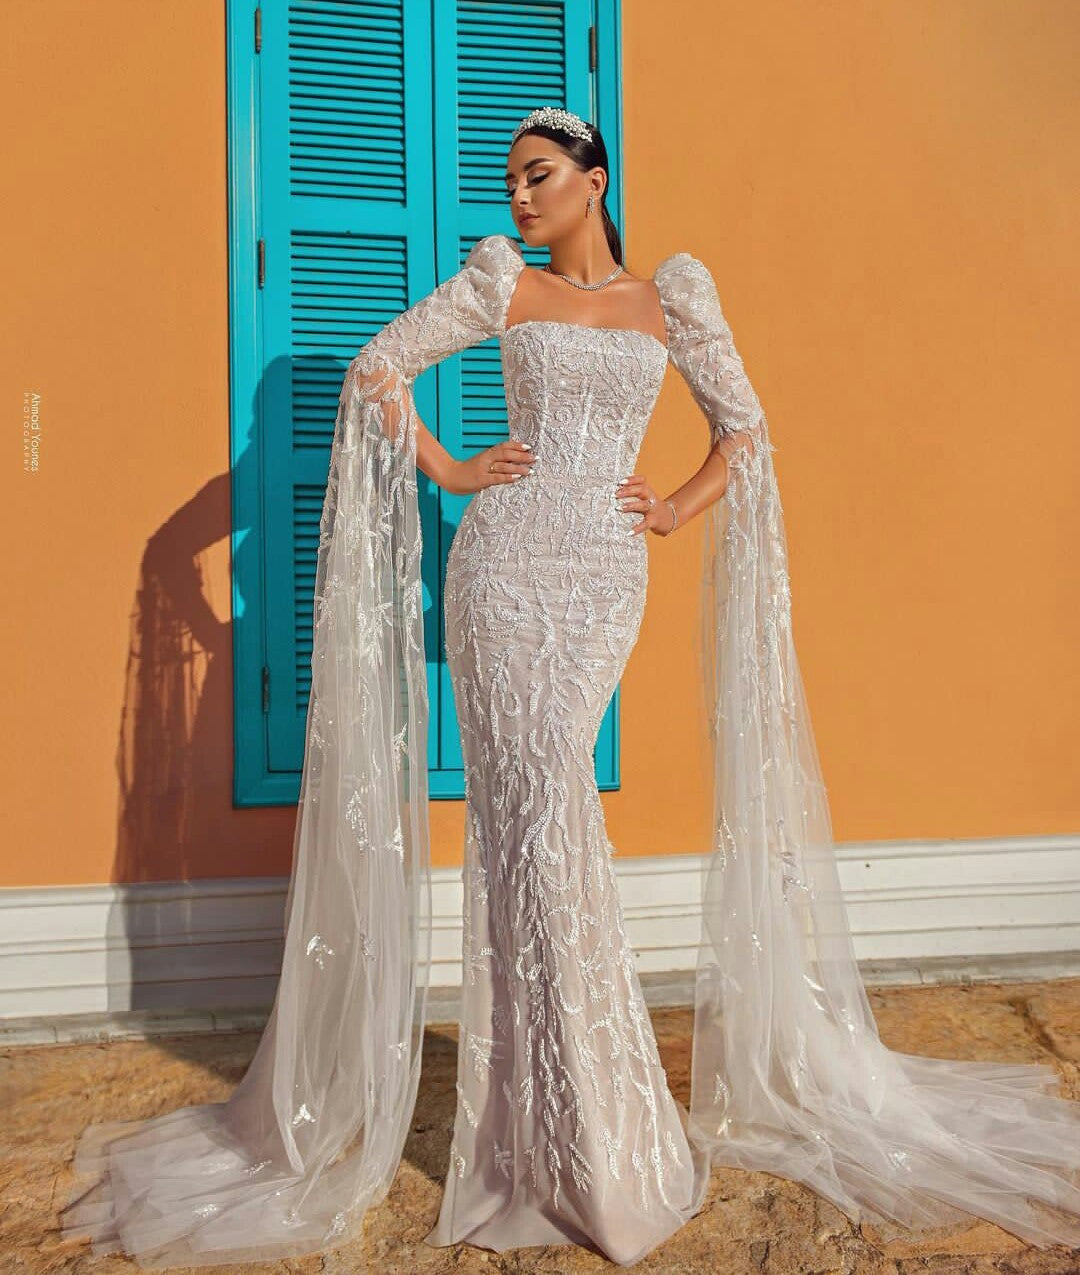 Fashion Mermaid Wedding Dress Fashion Mermaid Wedding Dress Fashion Mermaid Wedding Dress Fashion Mermaid Wedding Dress 